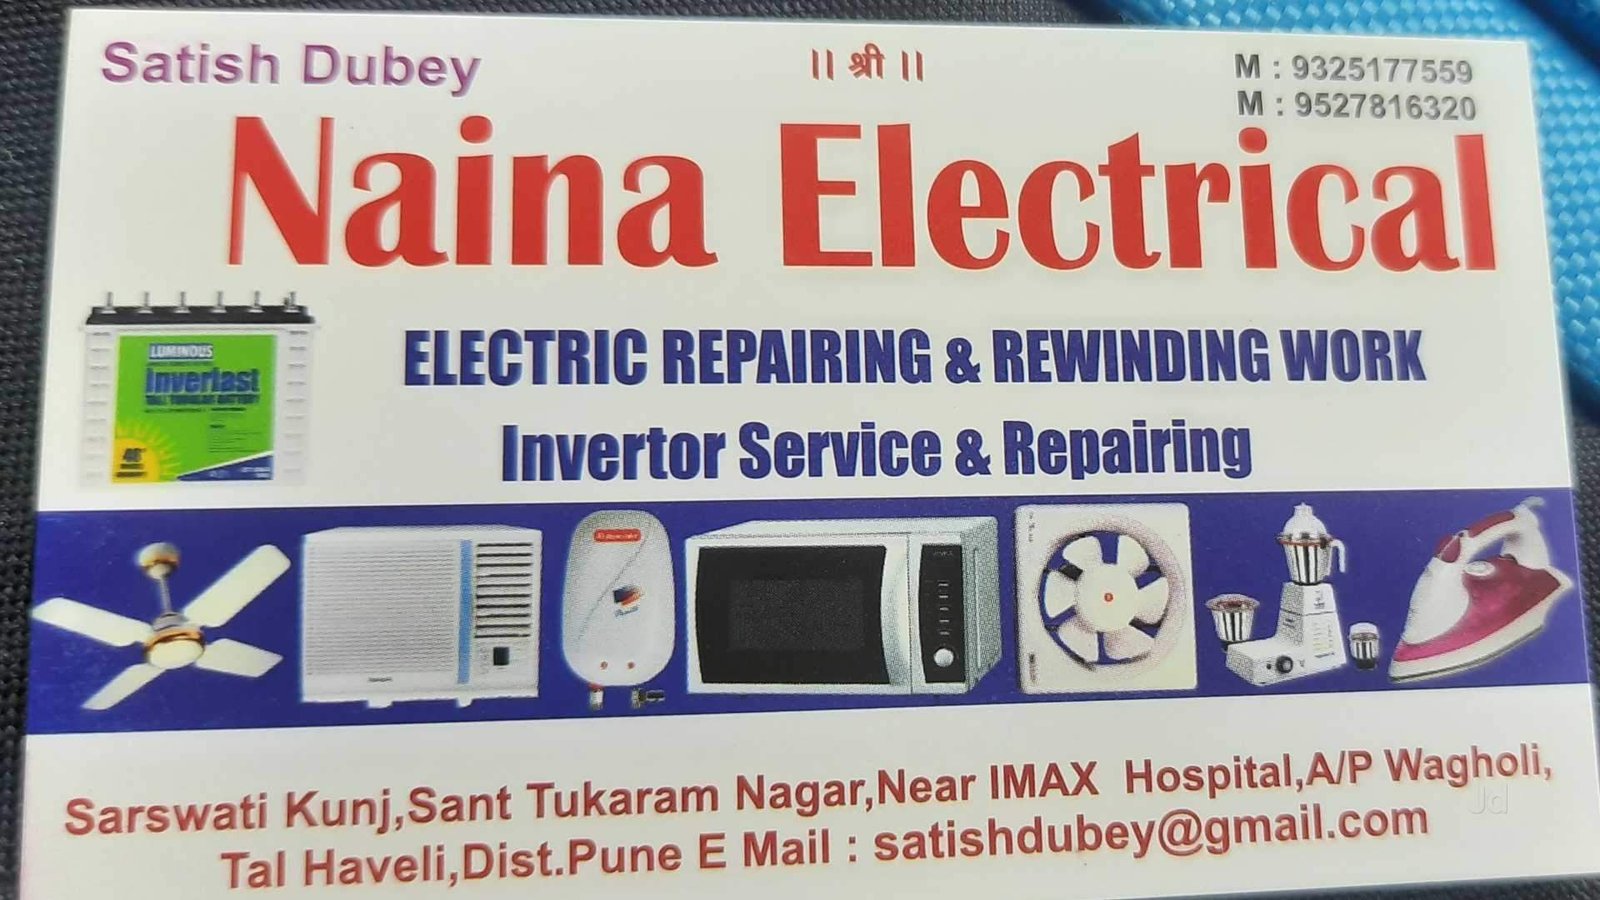   Naina Electrical